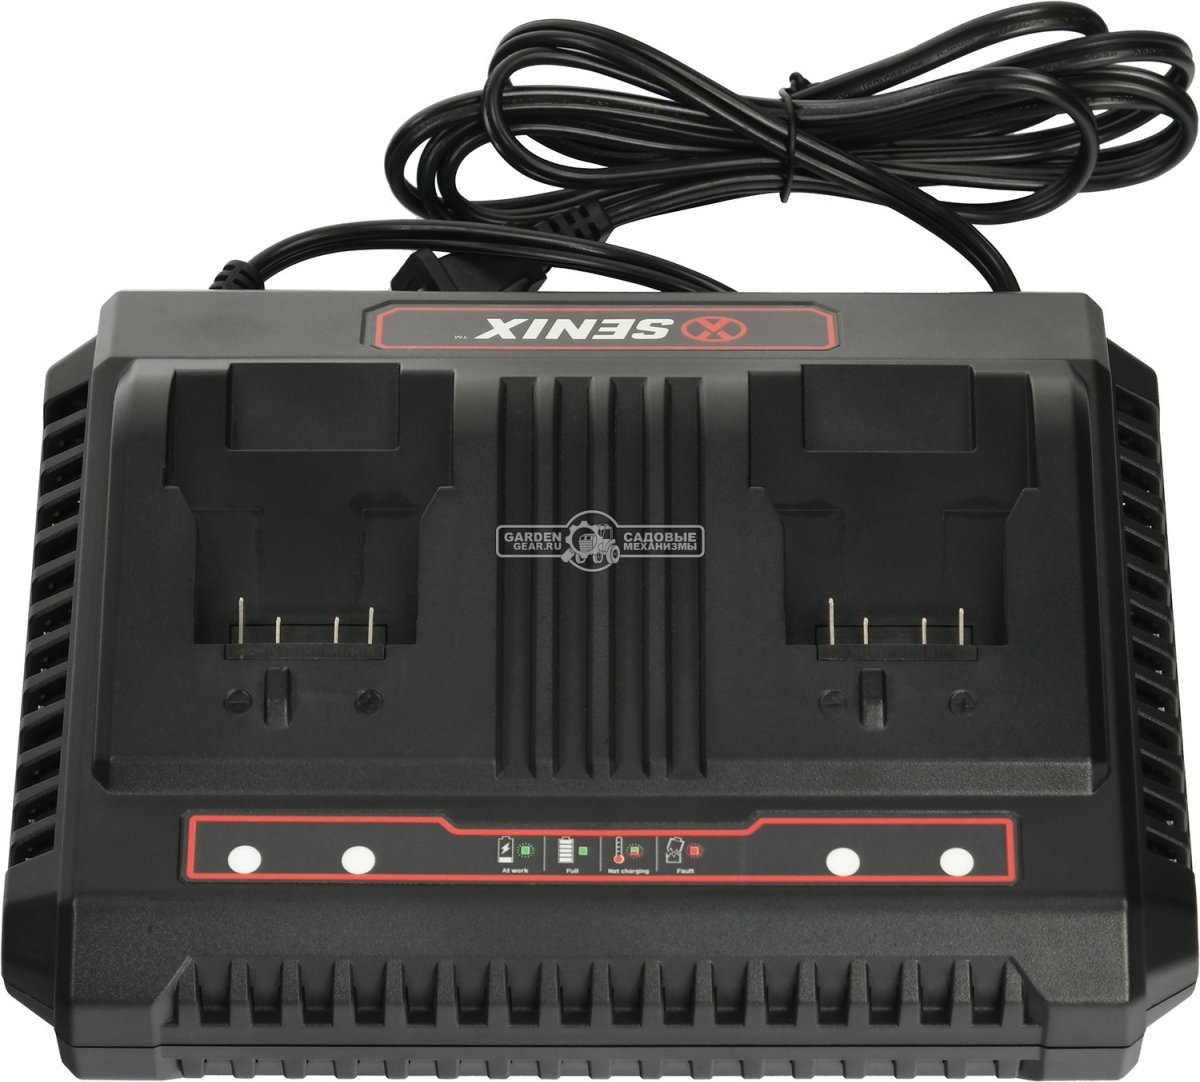 Зарядное устройство Senix CHDX2-M-EU двухпортовое для аккумуляторов 18В (2 х 3А)